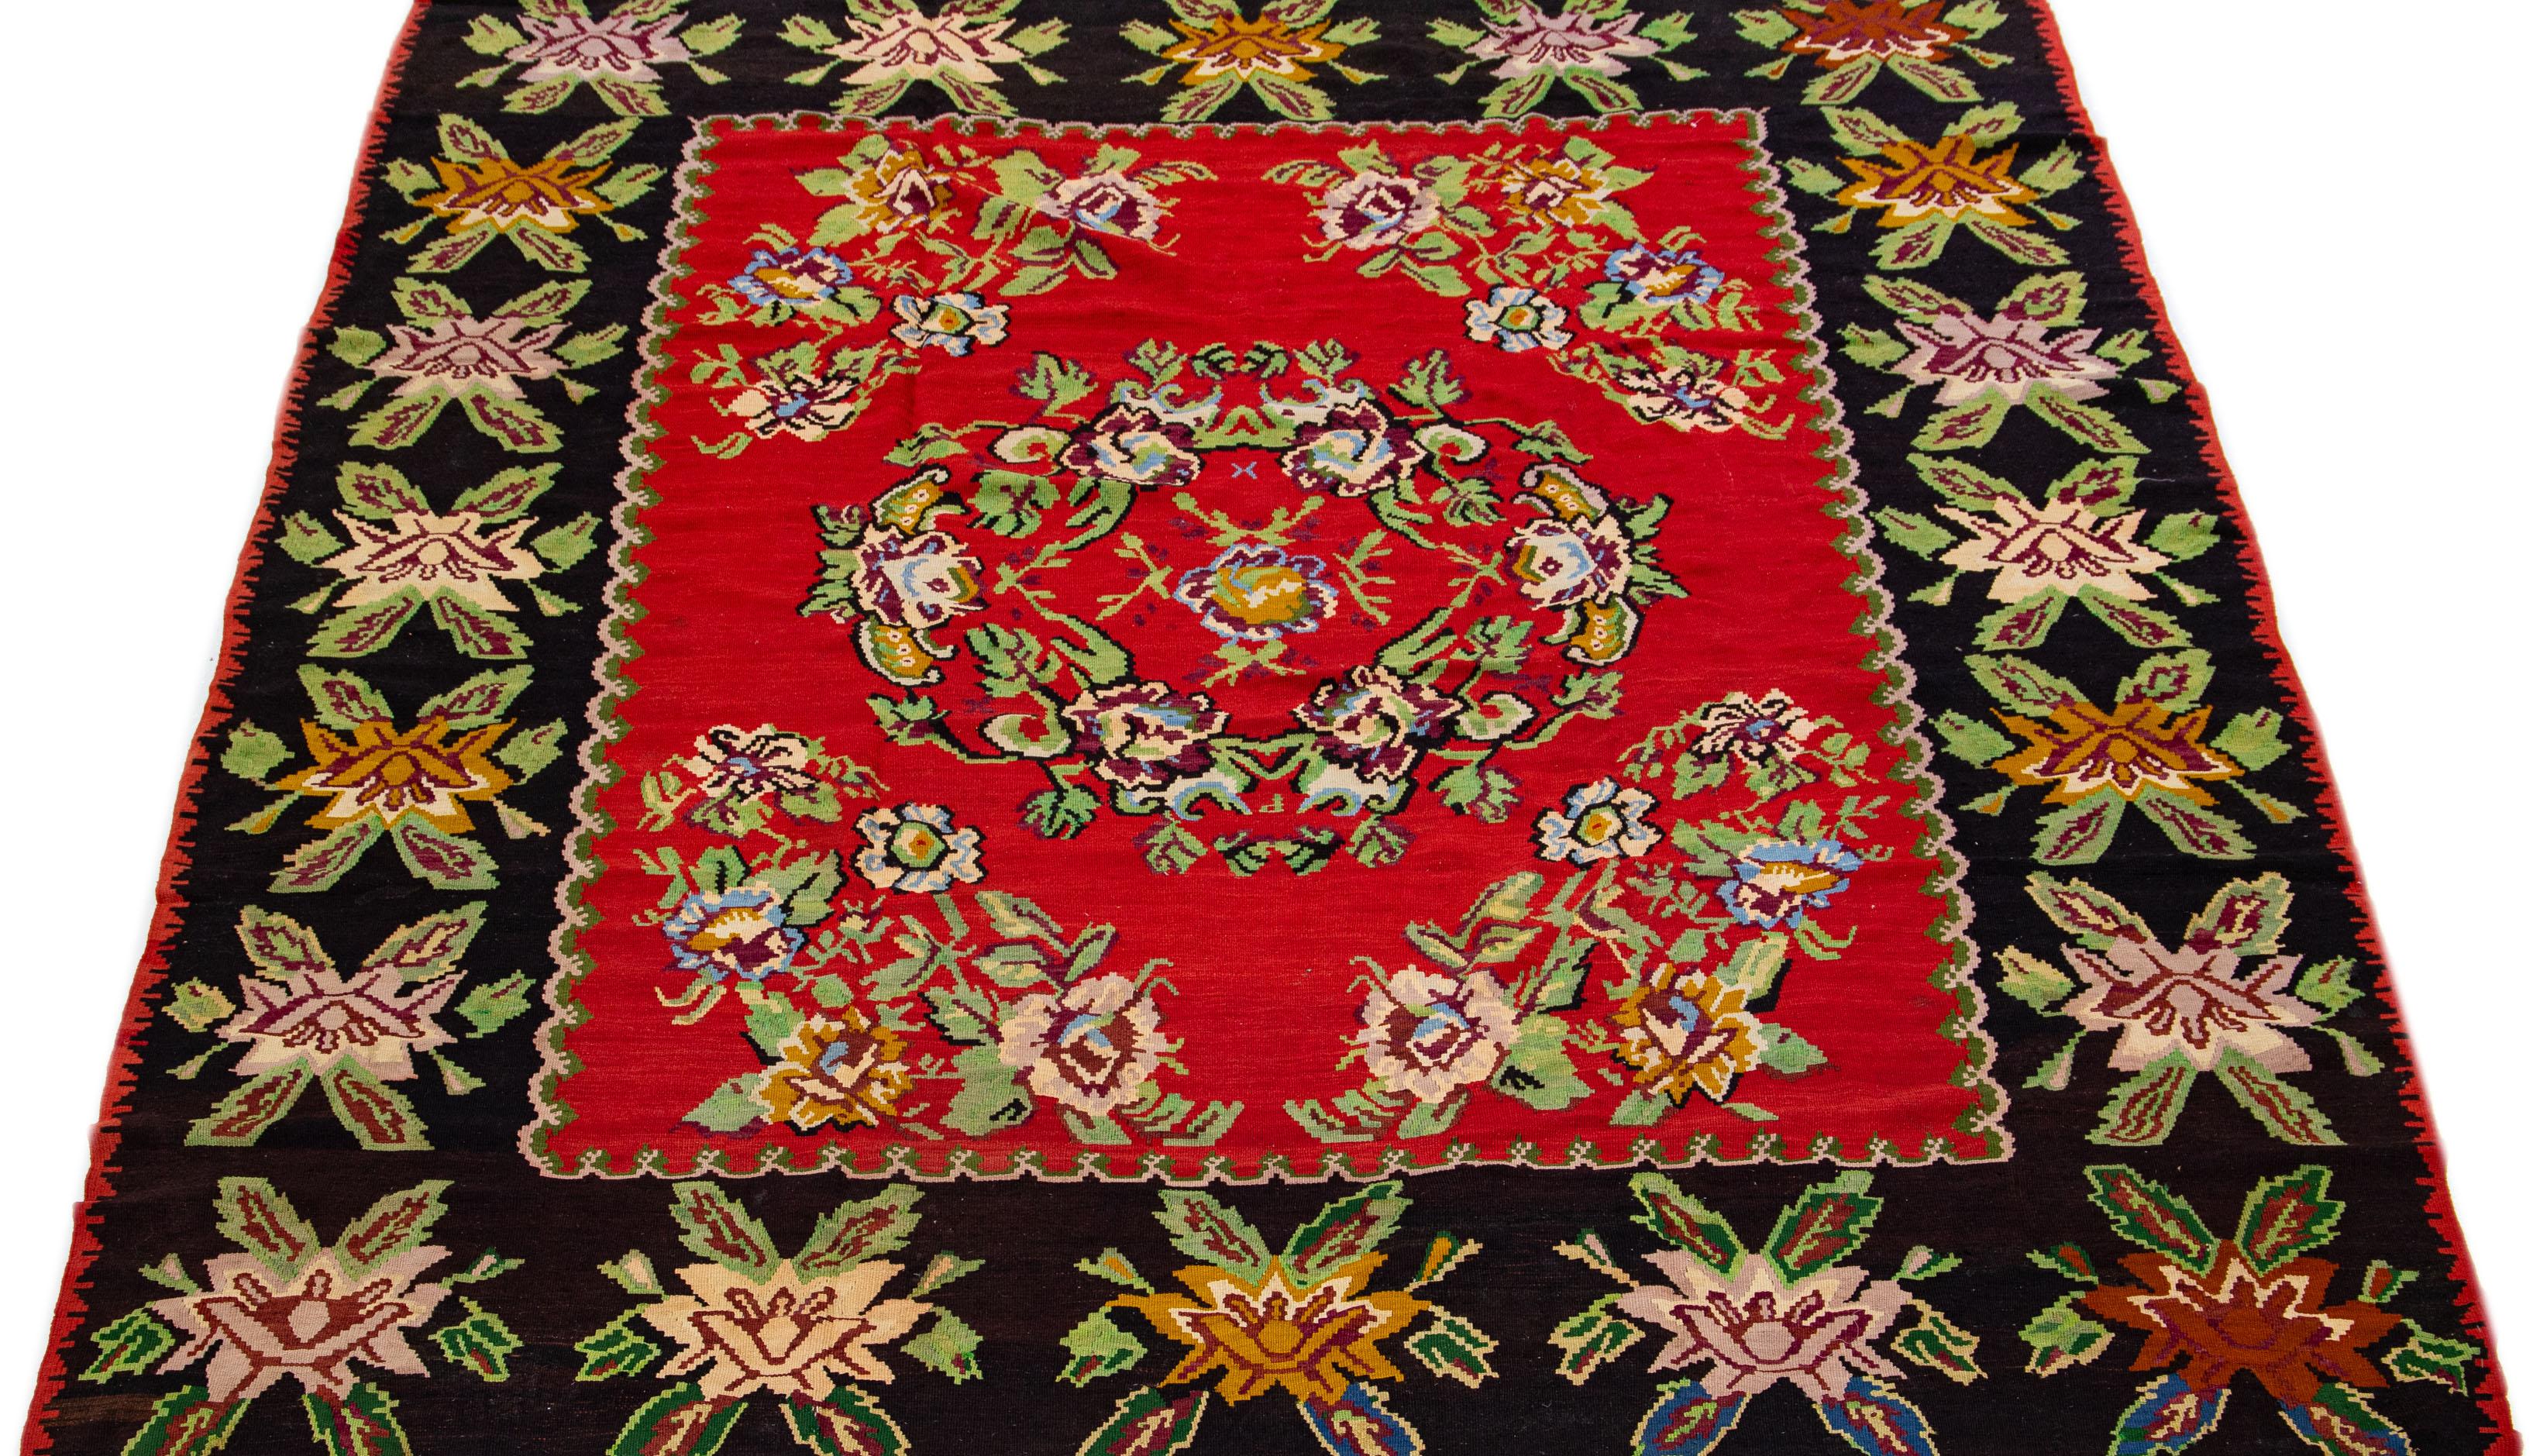 Ce tapis exquis de style Rug & Kilim présente un motif floral saisissant mis en valeur sur un riche fond rouge. Les charmants accents de vert, de bleu, de rose et de noir ajoutent une délicieuse touche de couleur à cette pièce méticuleusement nouée